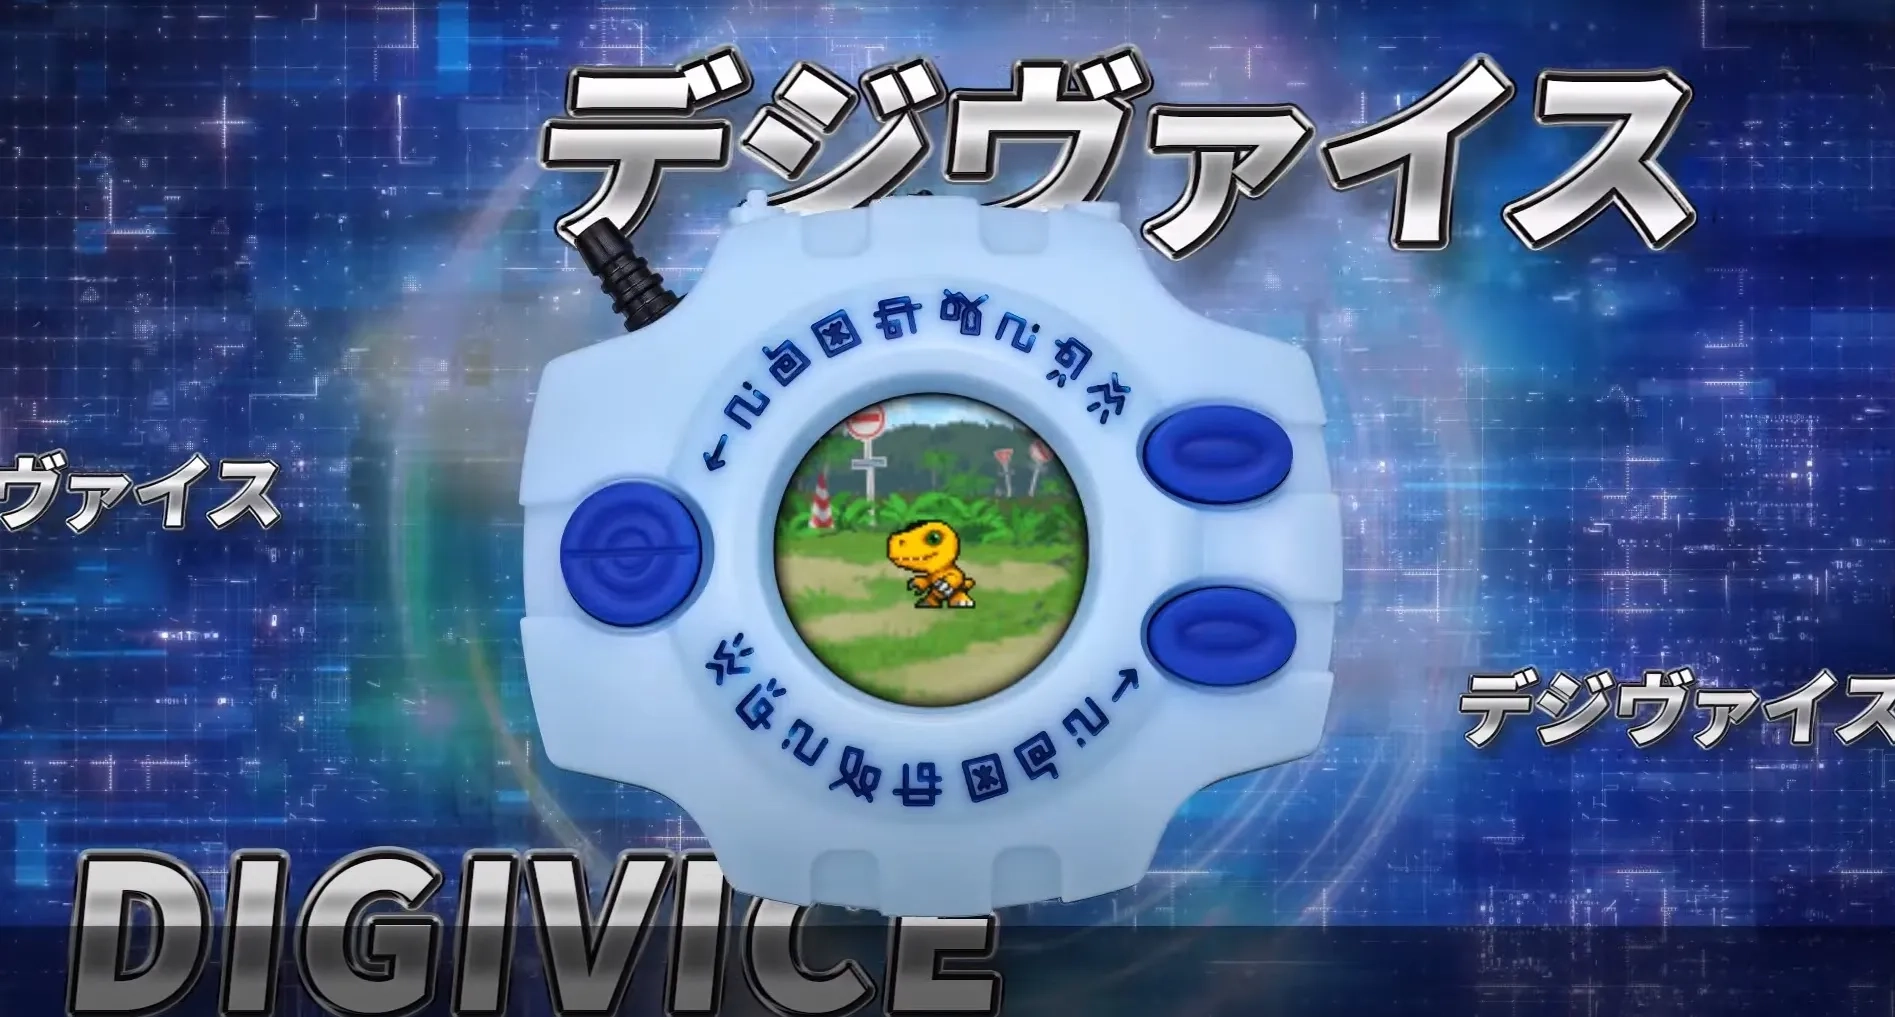 Digimon celebra su 25 aniversario con estos increíbles Digivice - Coanime.net